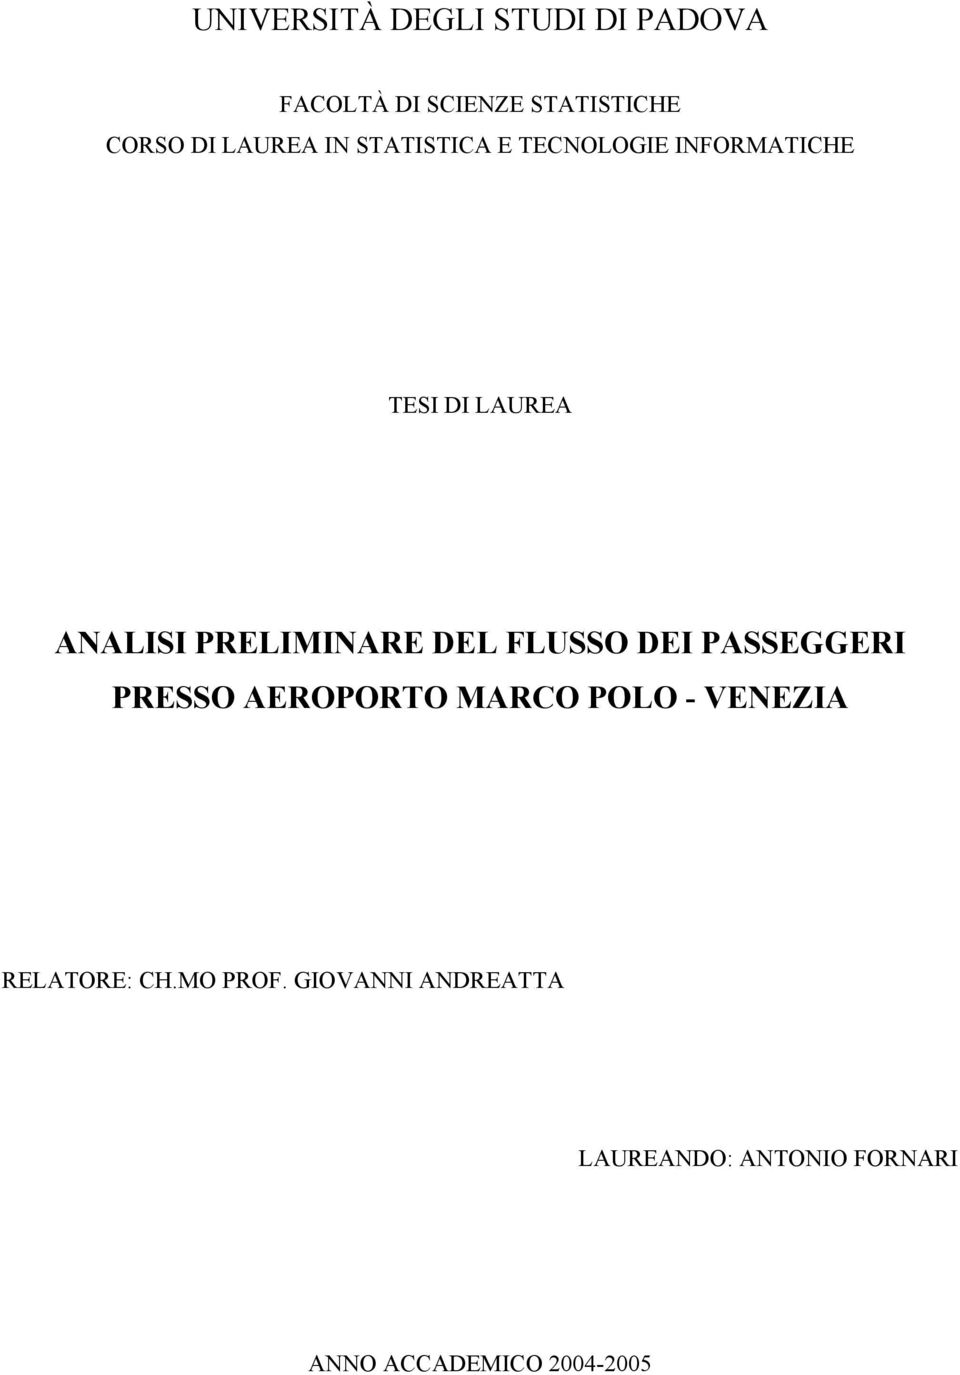 PRELIMINARE DEL FLUSSO DEI PASSEGGERI PRESSO AEROPORTO MARCO POLO - VENEZIA